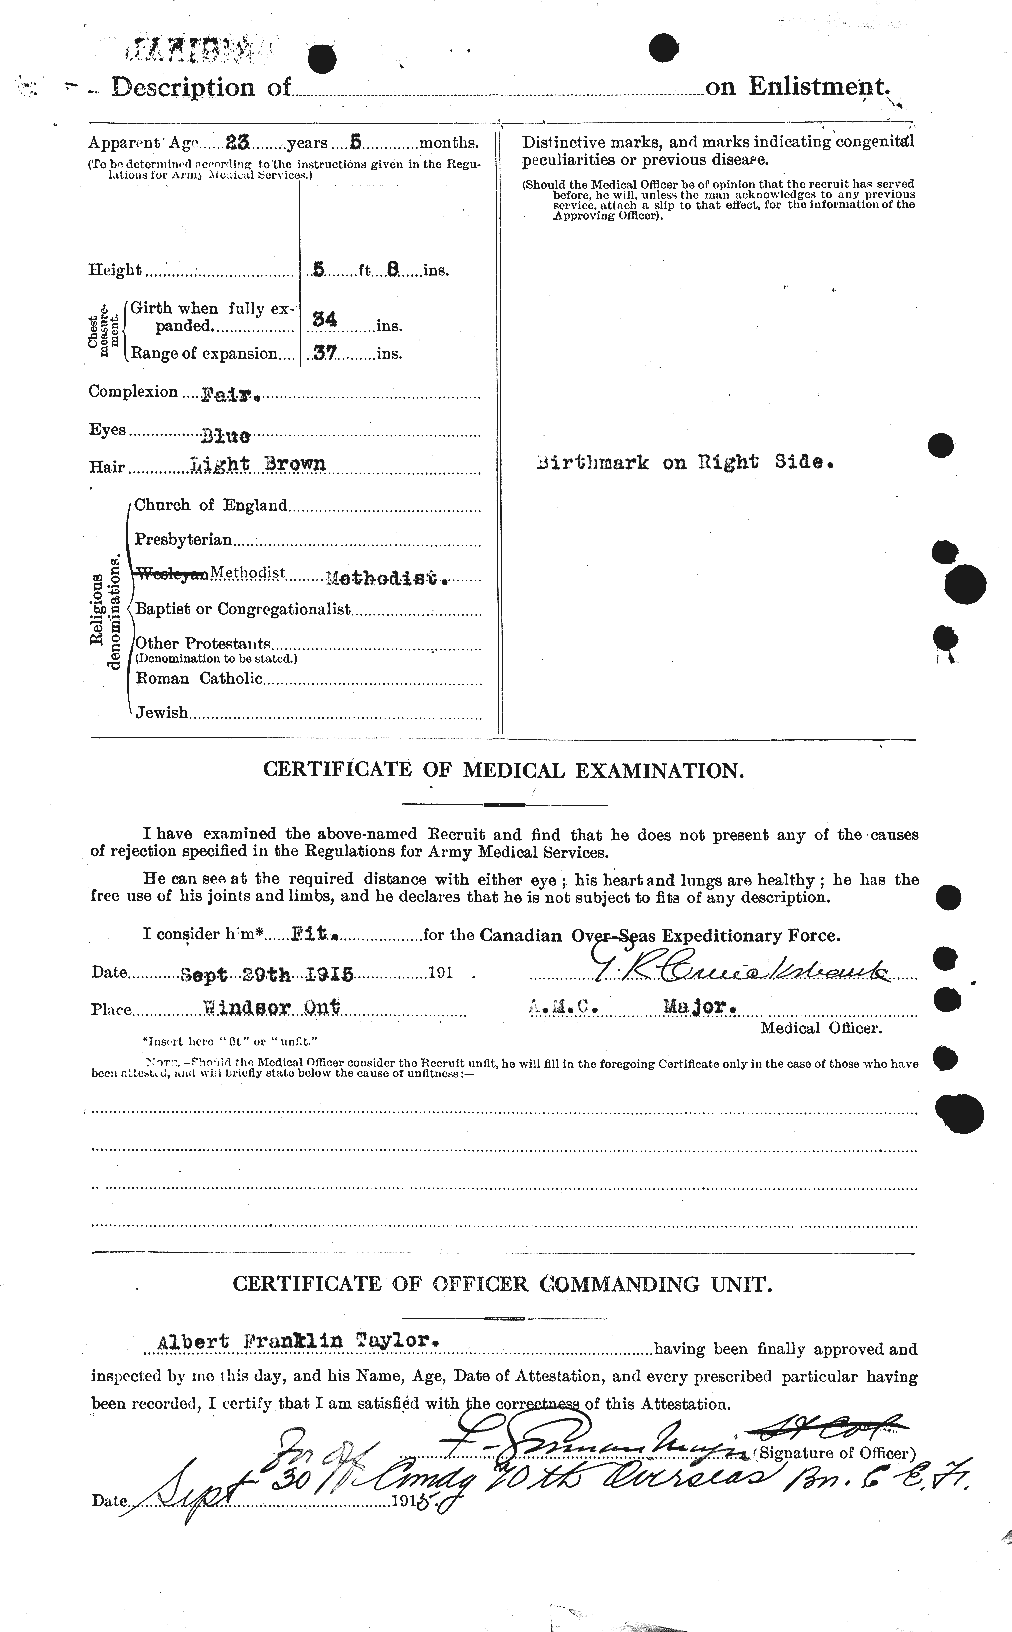 Dossiers du Personnel de la Première Guerre mondiale - CEC 626111b